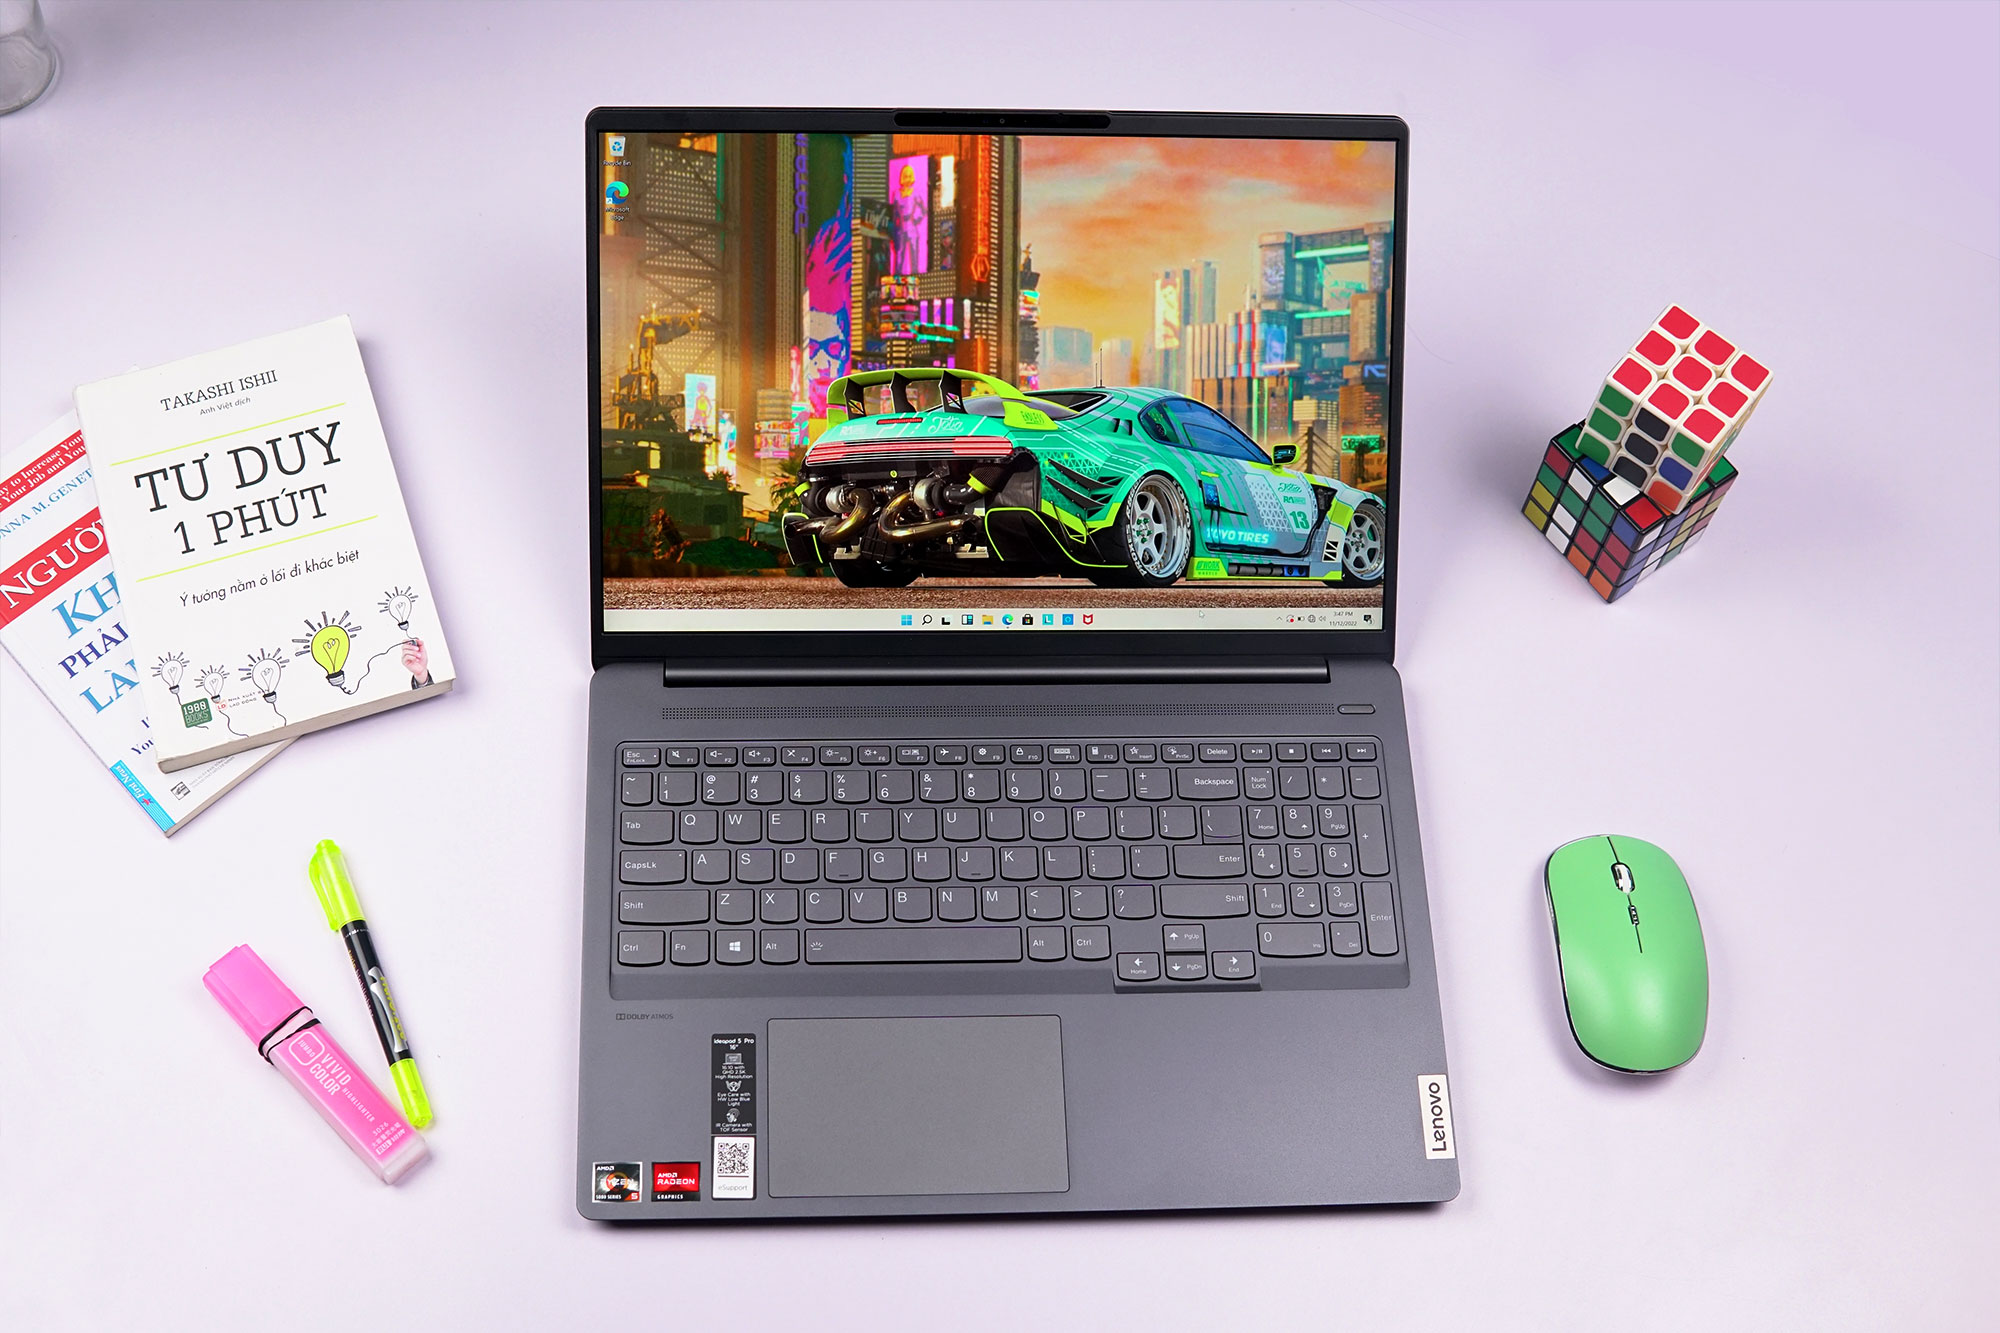 Điểm danh top 3 laptop dành cho văn phòng hiệu năng cao, bền đẹp, giá tốt?